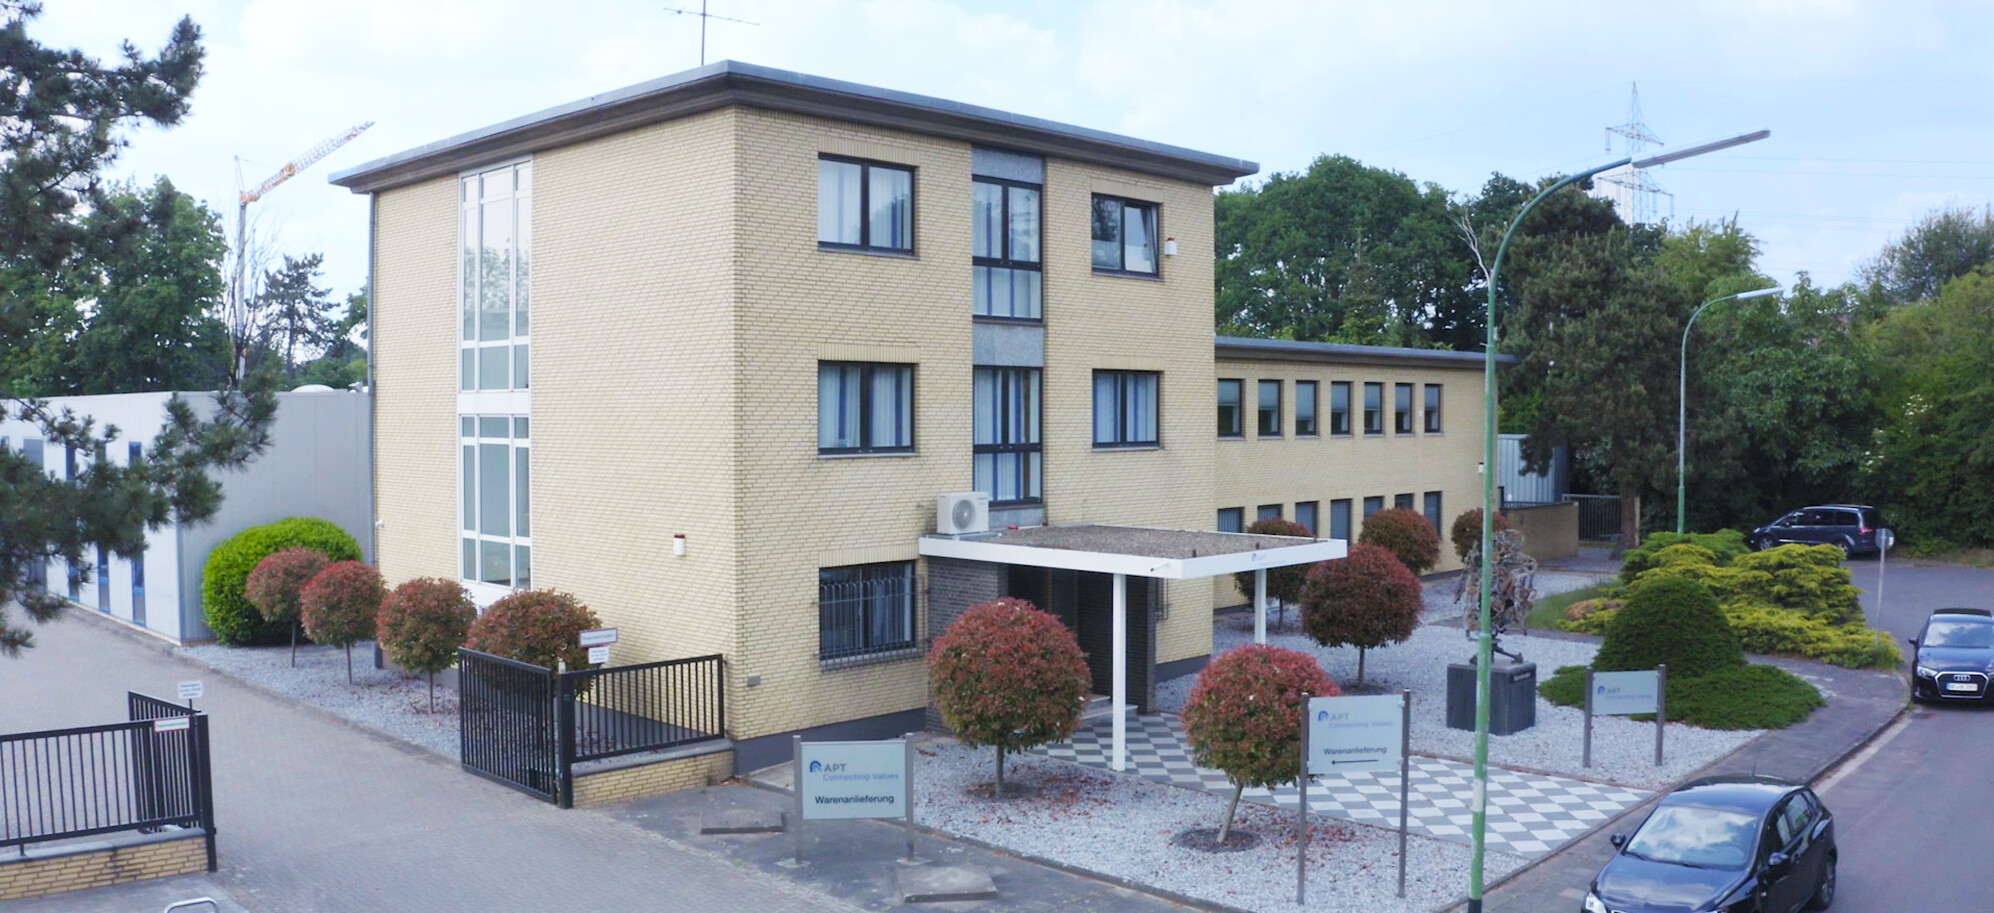 Das Firmengebäude der APT in Neuss mit einer Drohne von oben aufgenommen. 